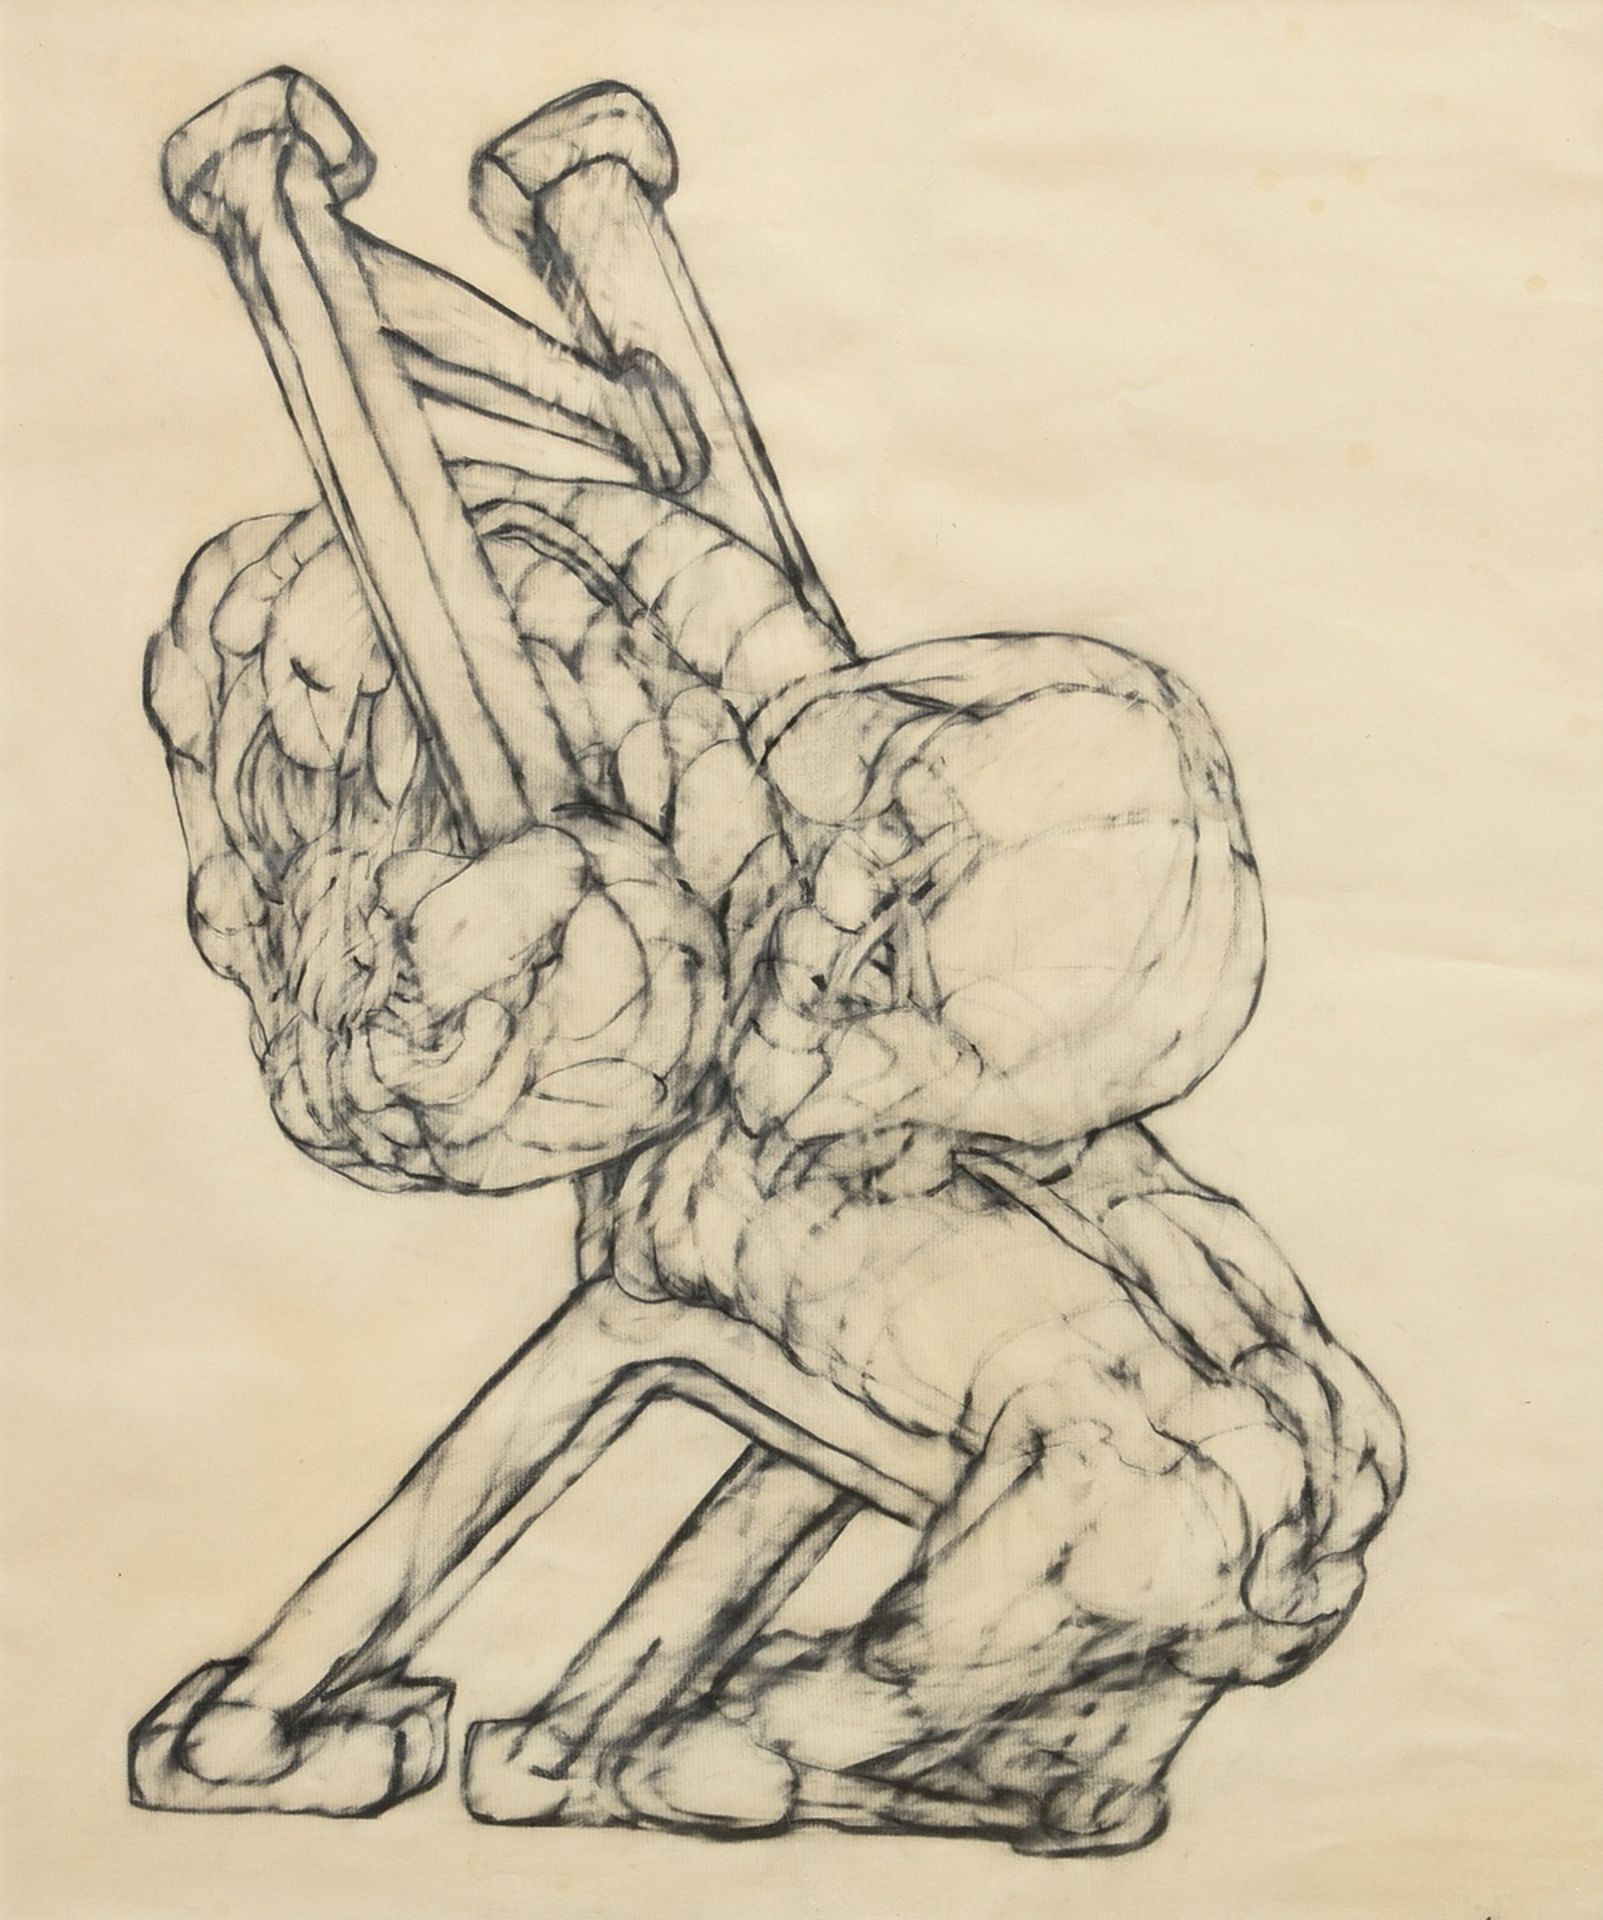 Hoflehner, Rudolf (1916-1995) "Entwurf für eine Plastik" 1973, Bleistift, u.r. sign./dat., 58,5x48,